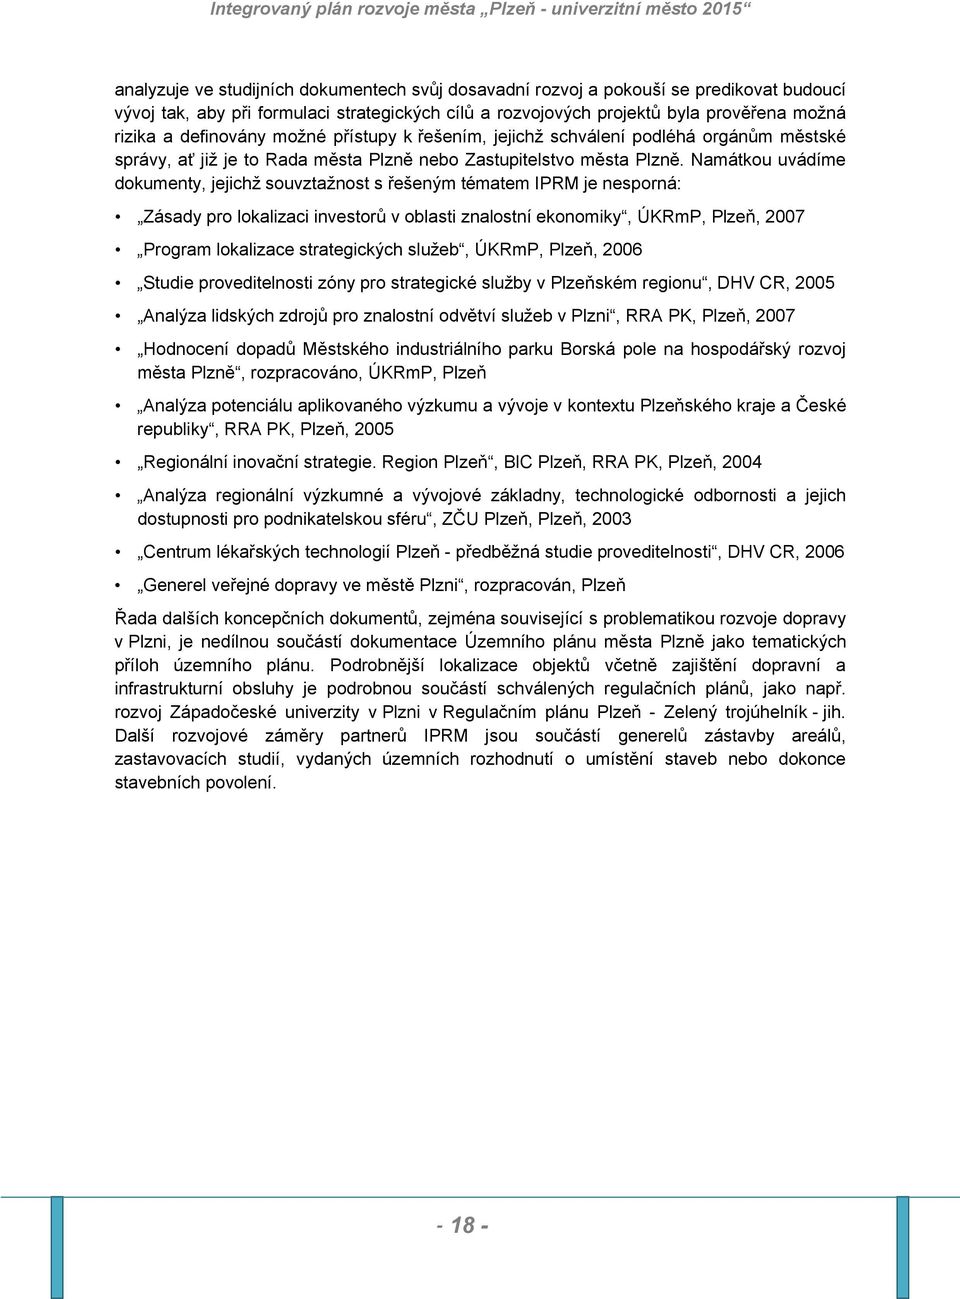 Namátkou uvádíme dokumenty, jejichž souvztažnost s řešeným tématem IPRM je nesporná: Zásady pro lokalizaci investorů v oblasti znalostní ekonomiky, ÚKRmP, Plzeň, 2007 Program lokalizace strategických